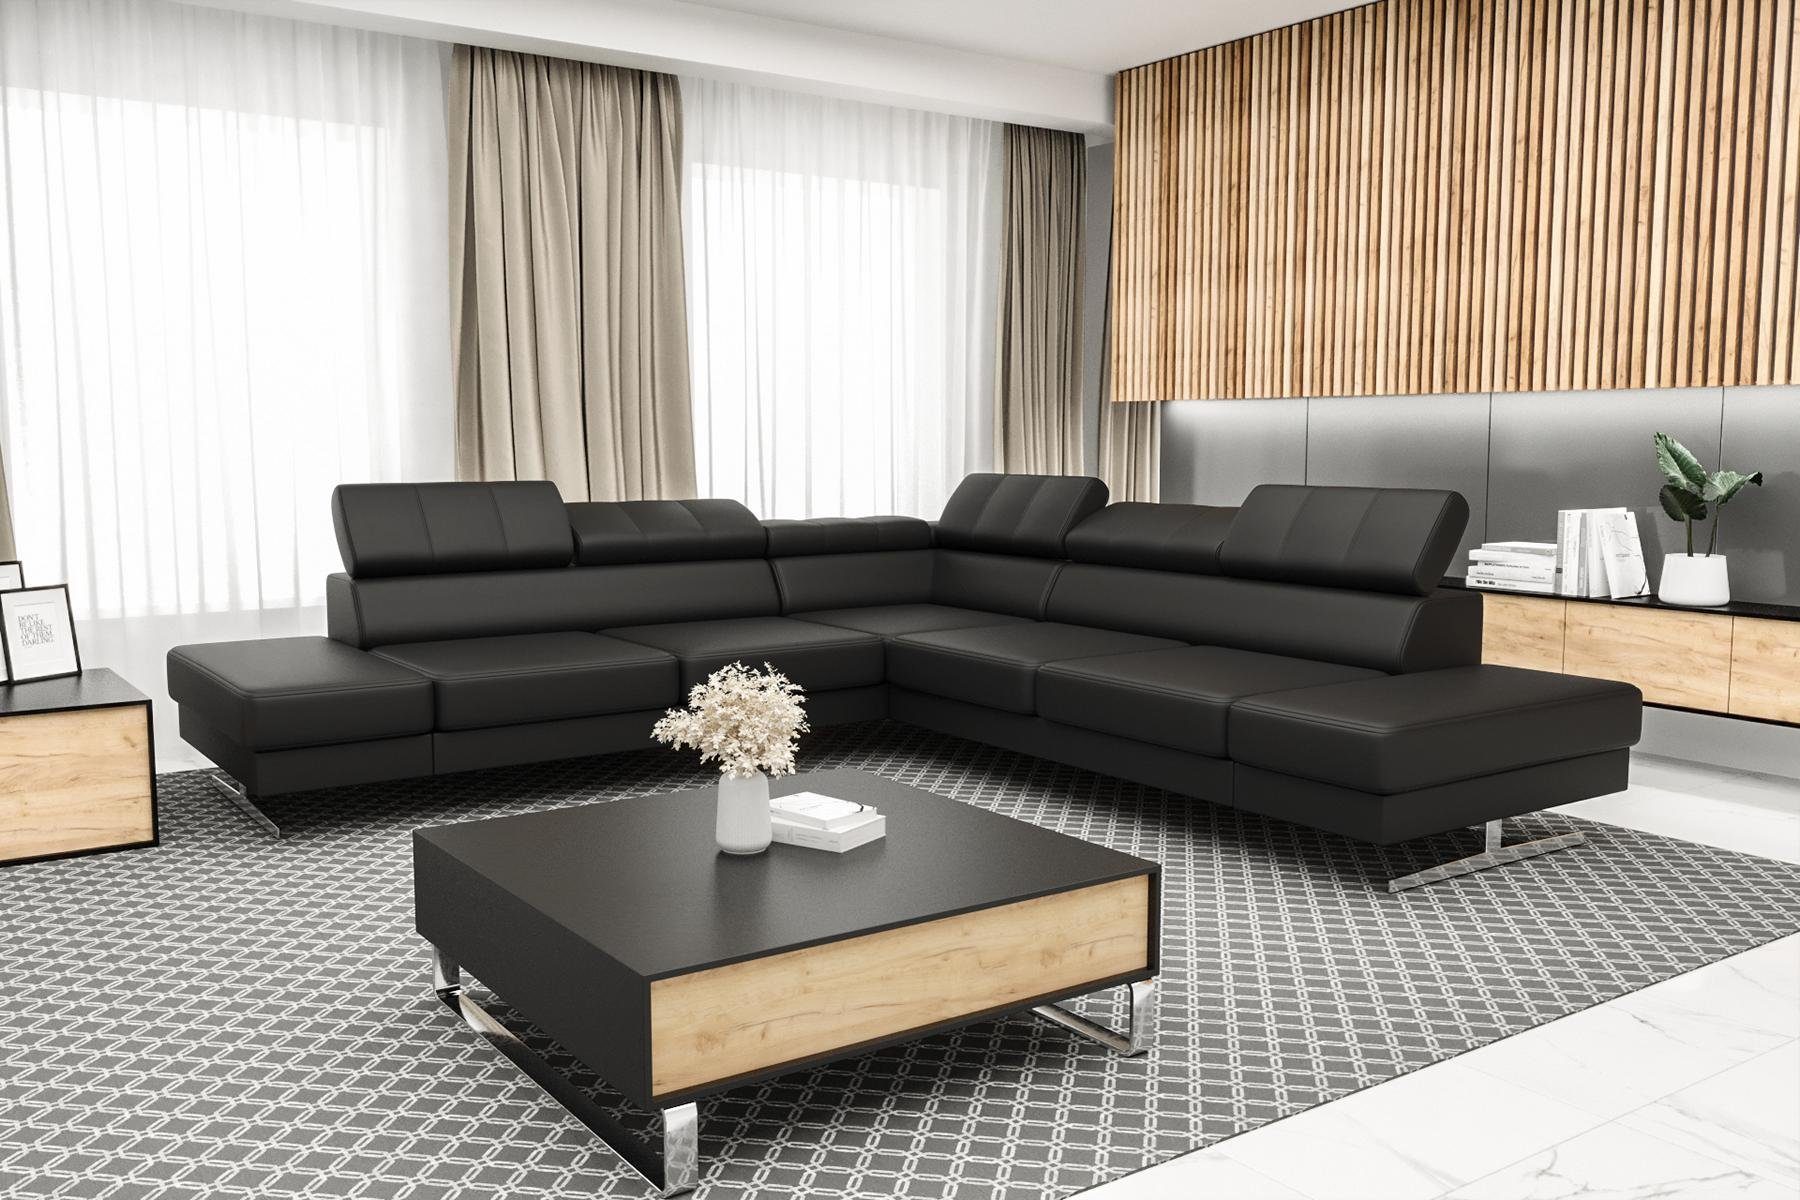 JVmoebel Ecksofa Textil, in Couch Designer Made L-Form Luxus Sofa Wohnzimmer Europe Schwarzes